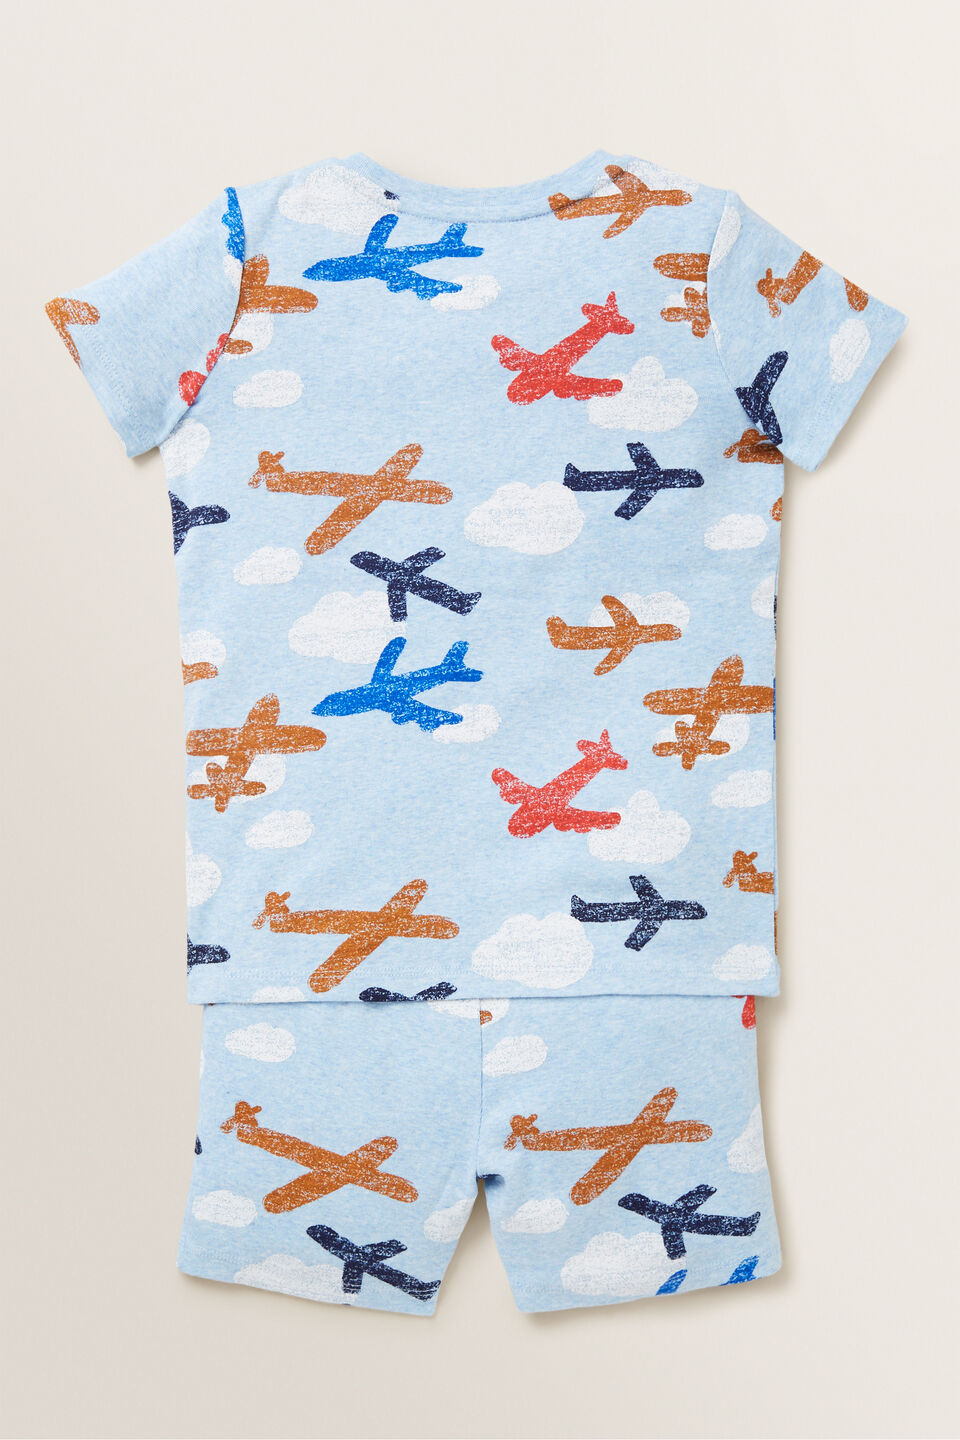 Plane Pyjama  